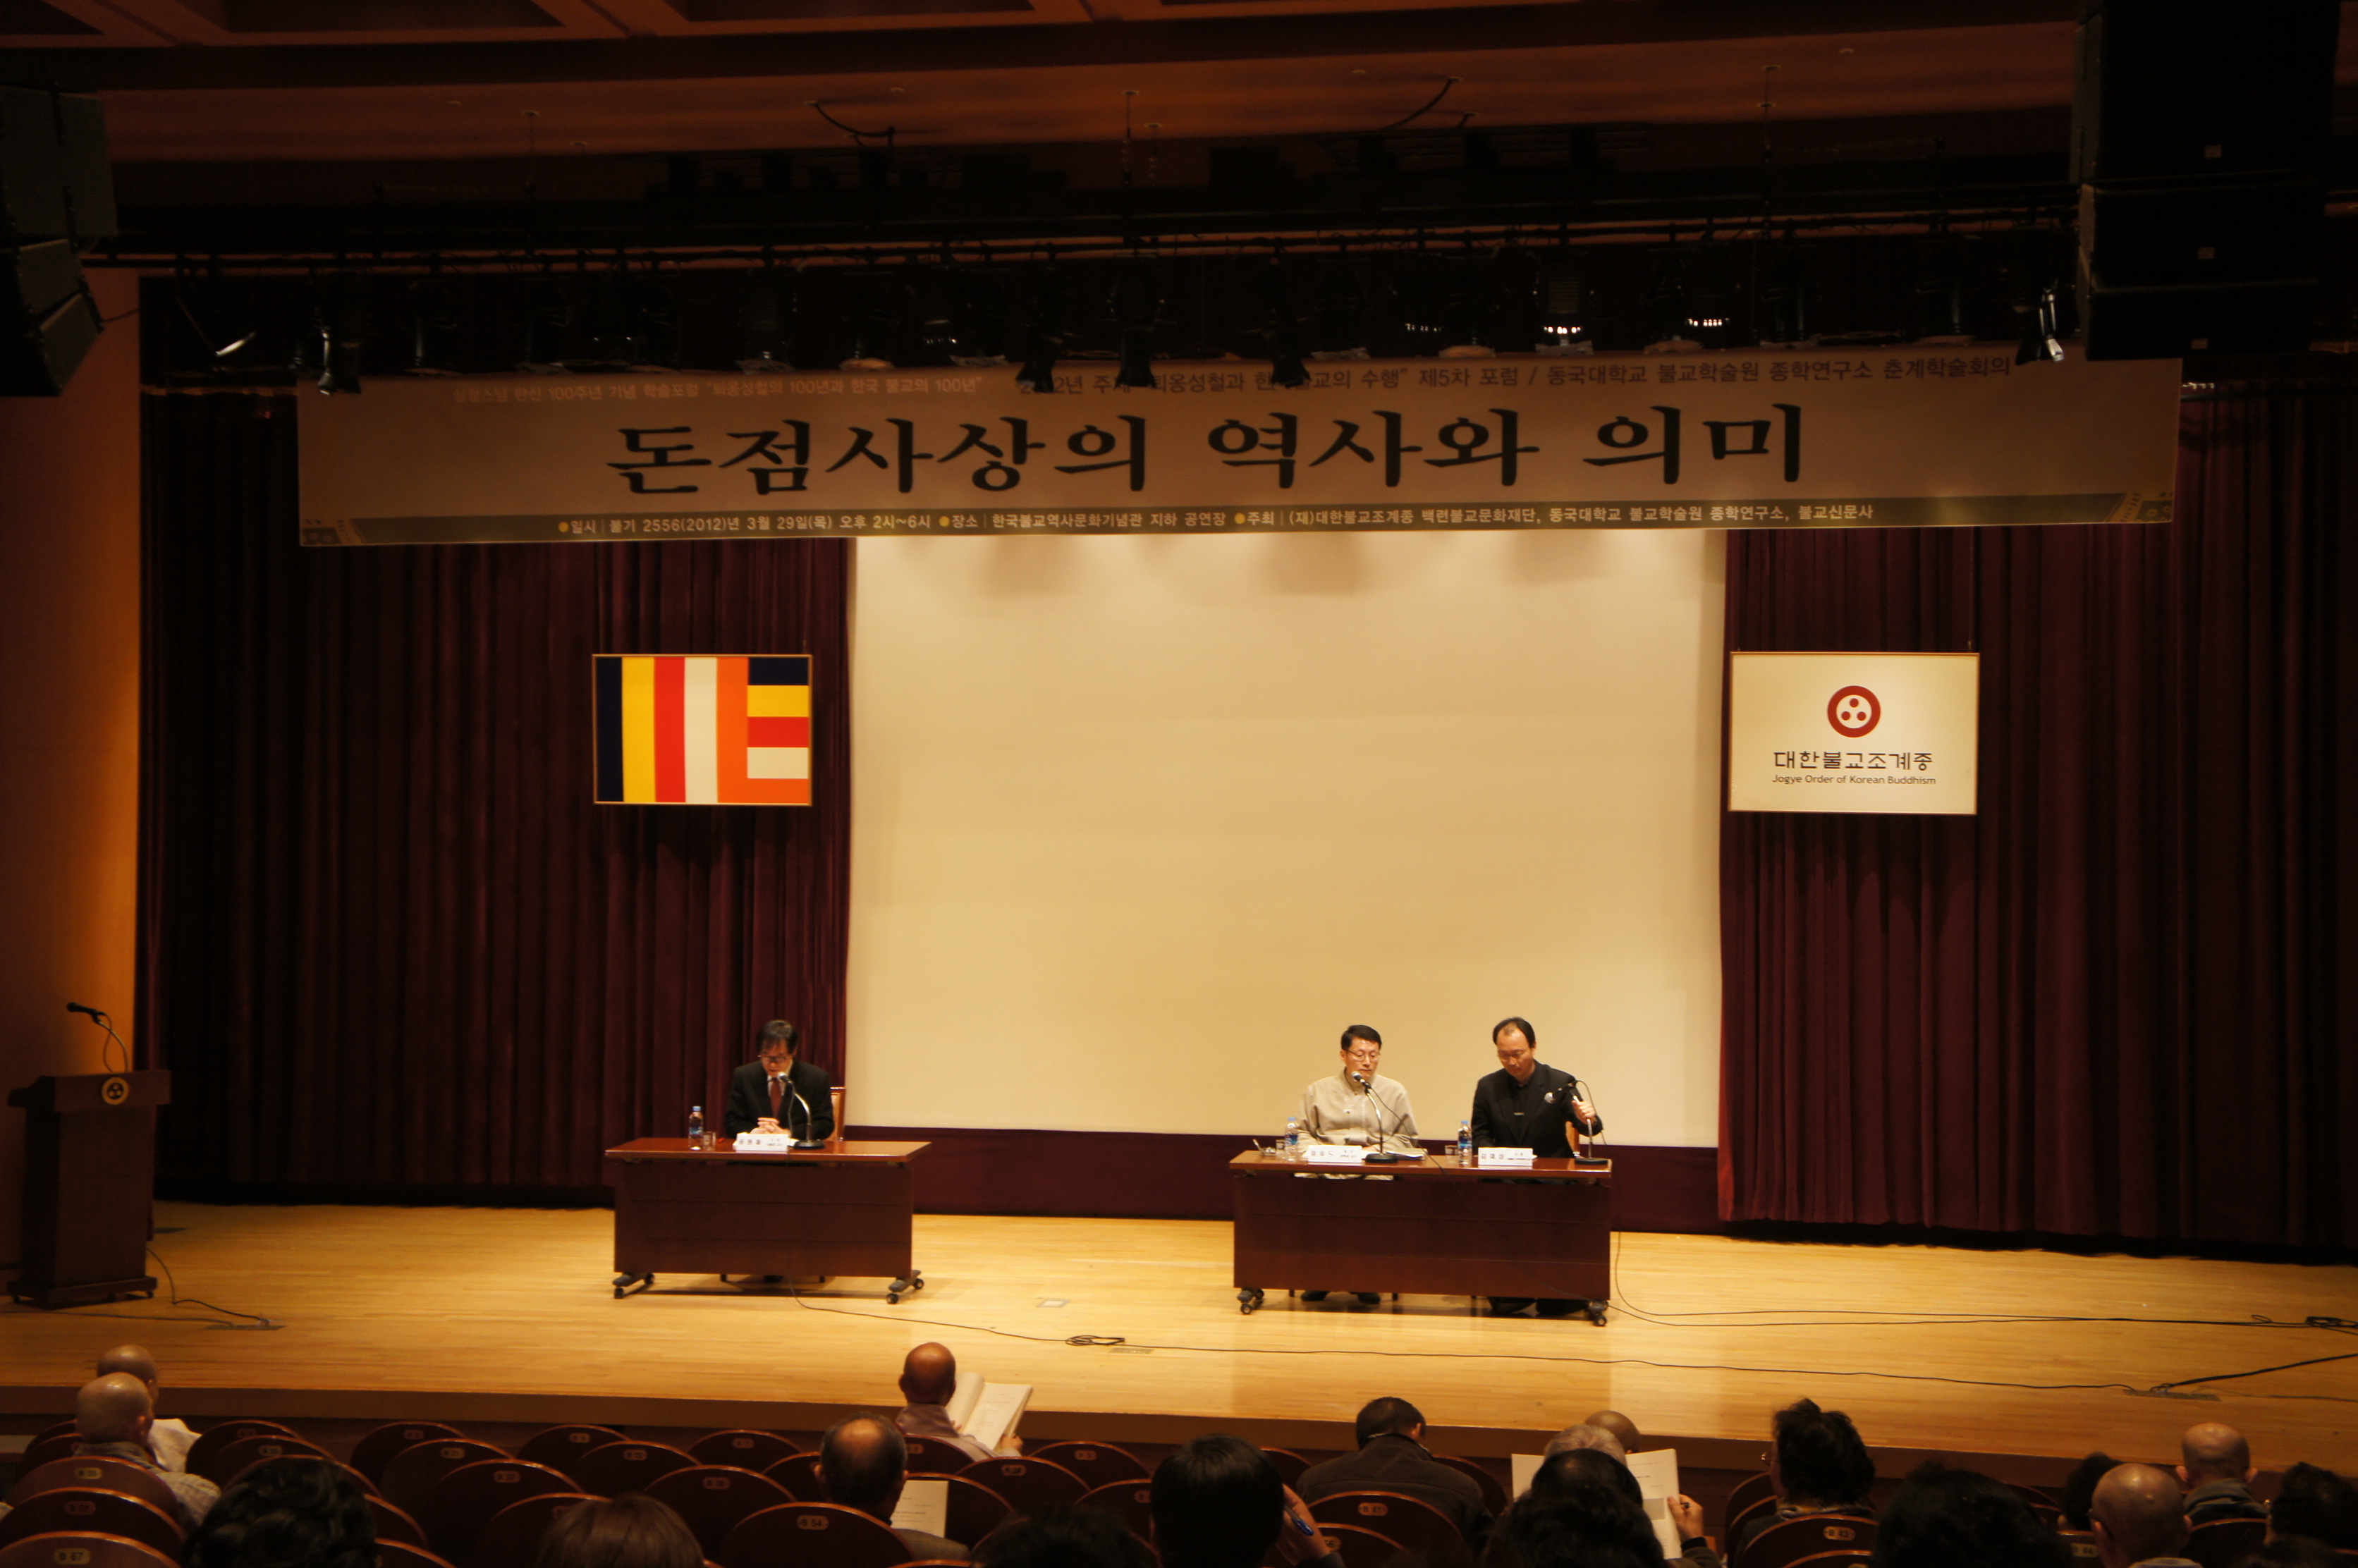 2012년 종학연구소 성철스님 탄신 100주년 기념 5차 학술포럼(The 5th Academic Forum in Commemoration of the 100th Anniversary of the Birth of Ven. Seongcheol )